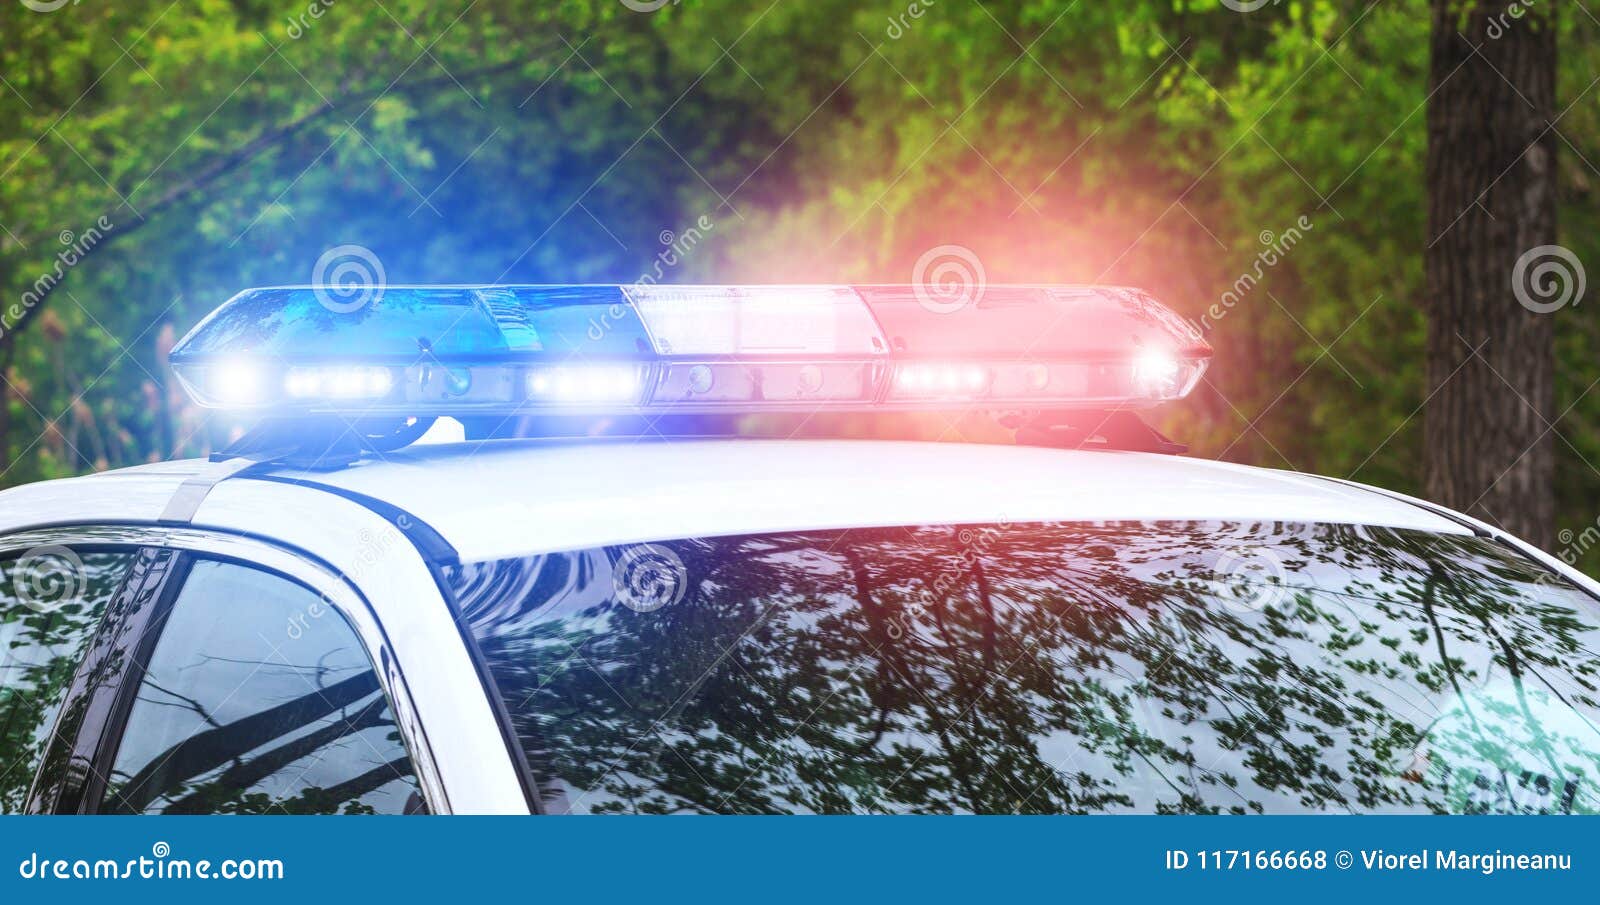 Sirènes De Police En Fonction Lumières Instantanées Bleues Et Rouges  D'emergen Photo stock - Image du asie, véhicule: 117166668